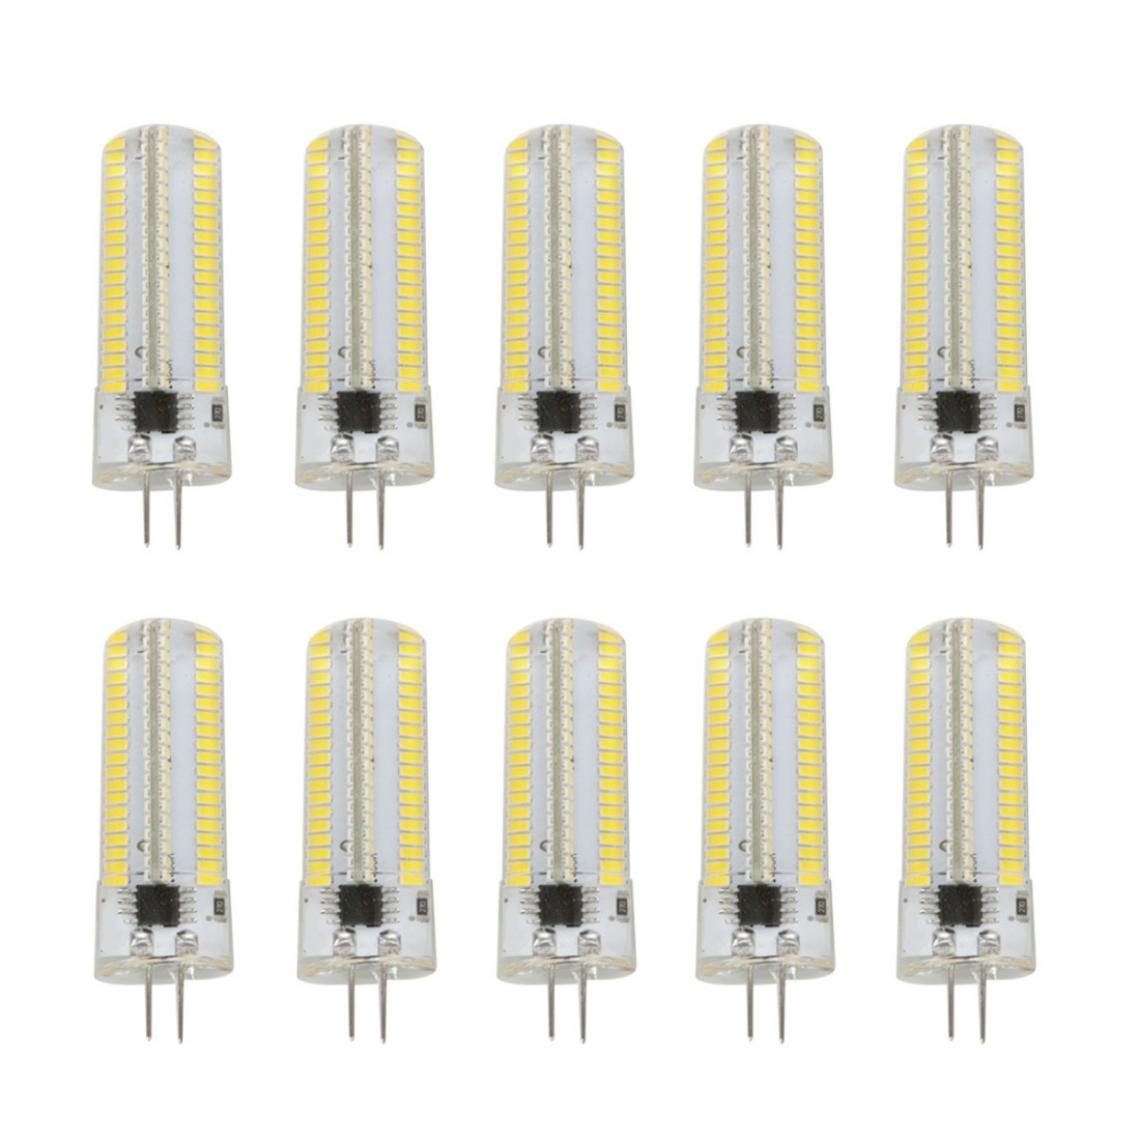 Wewoo - 10 PCS G4 7W 152 LED 3014 SMD 600-700 LM ampoules de maïs en silicone à intensité variableblanc chaudCA 110V - Ampoules LED